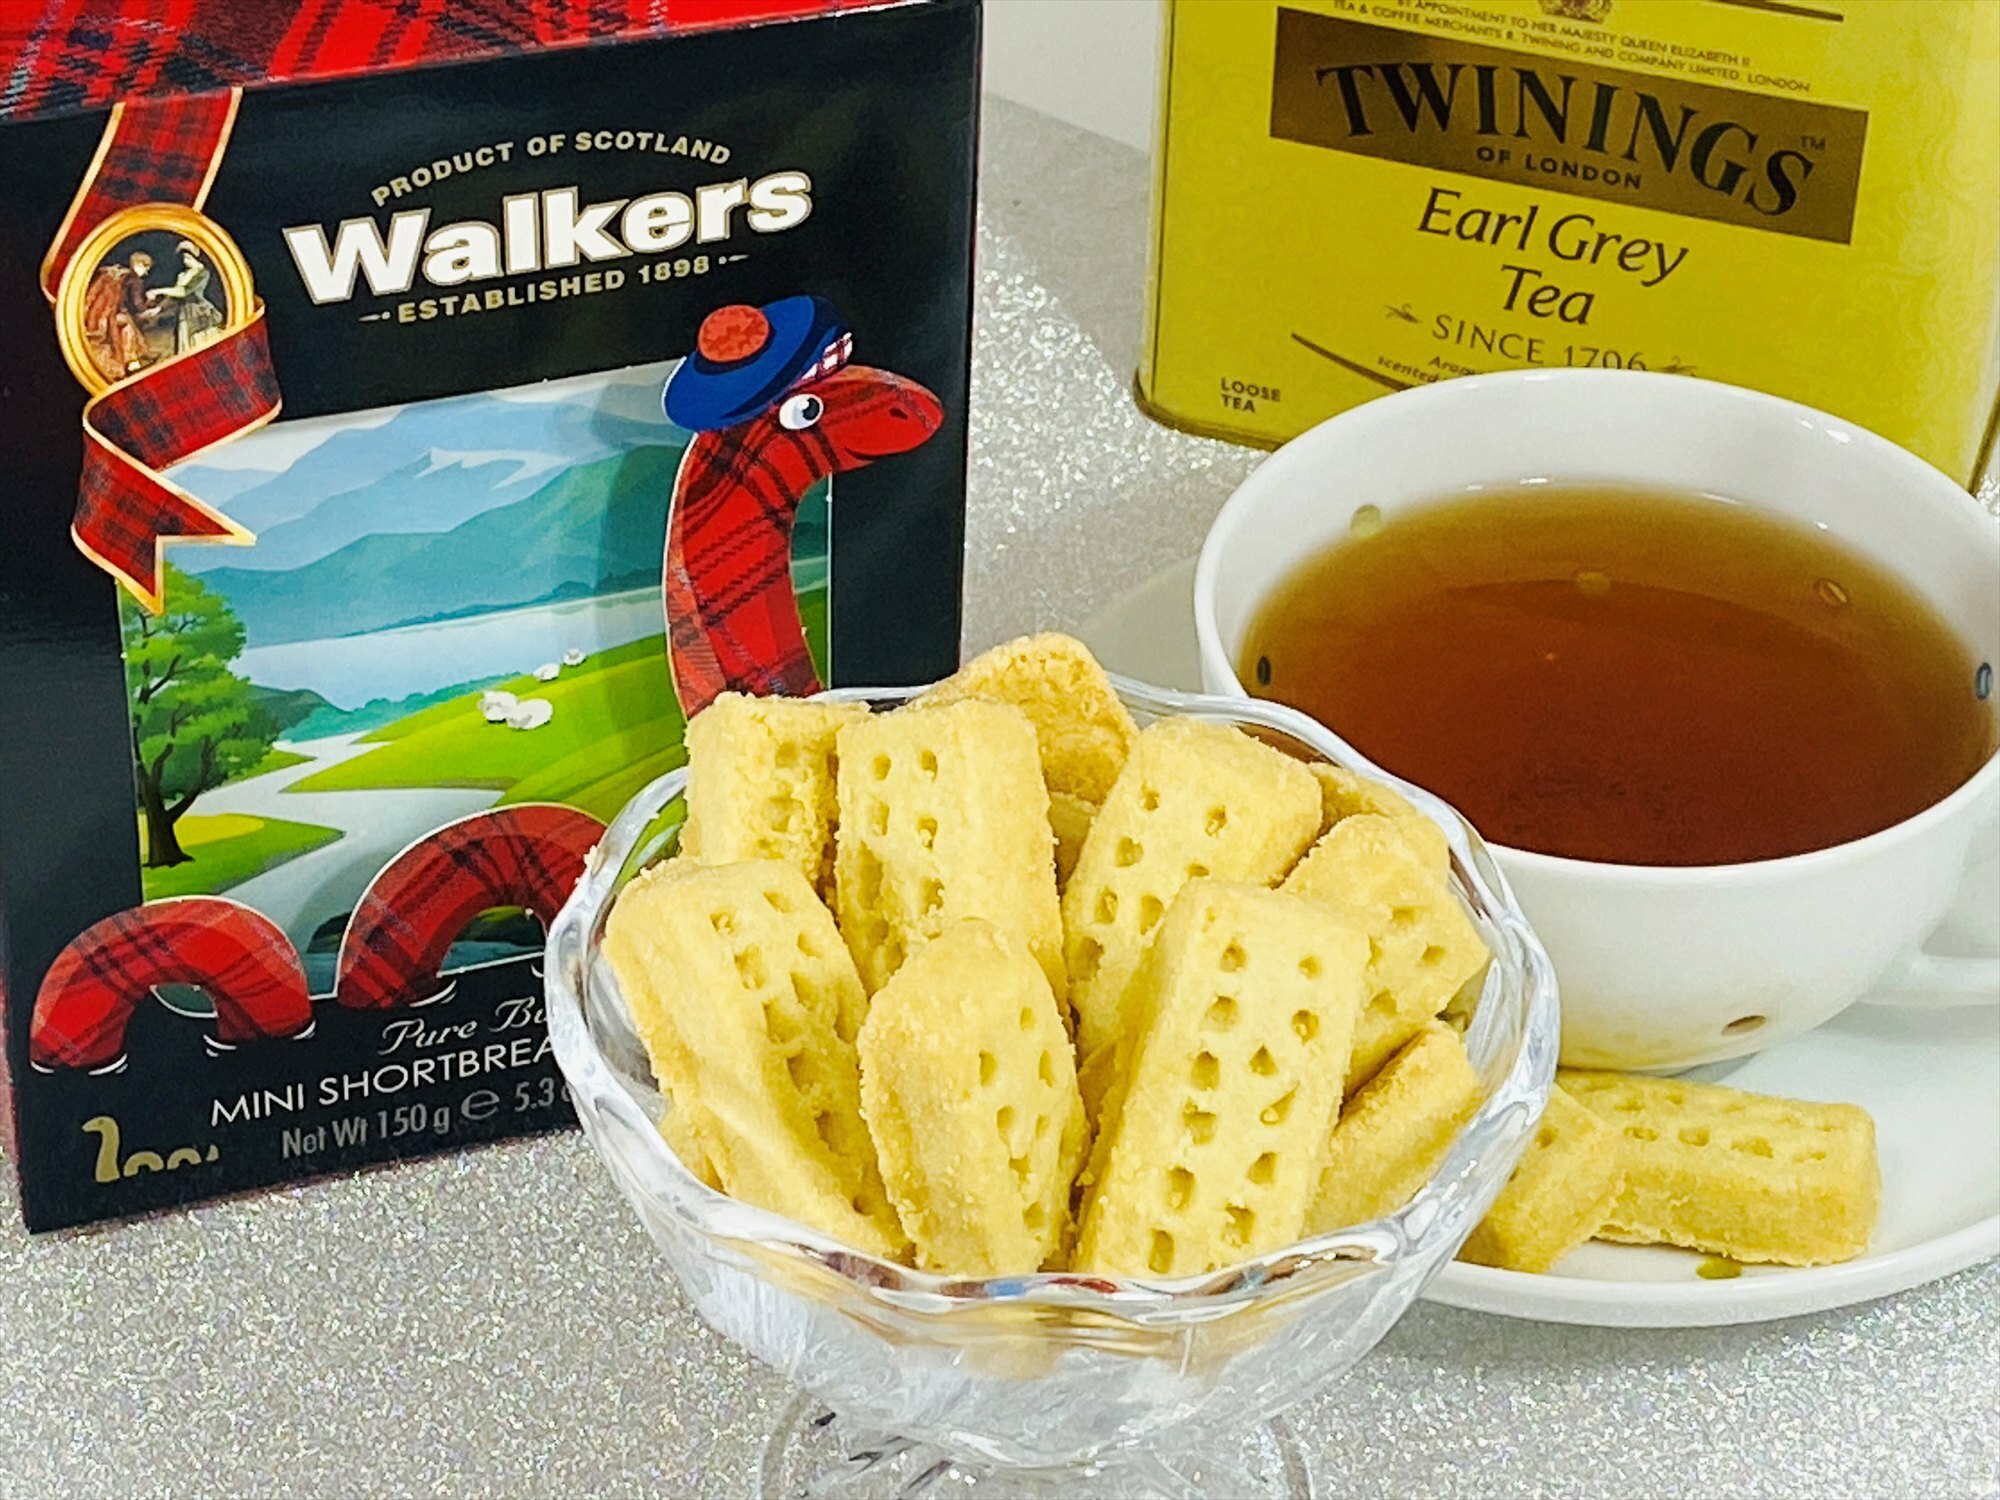 トワイニング紅茶とウォーカーショートブレッド